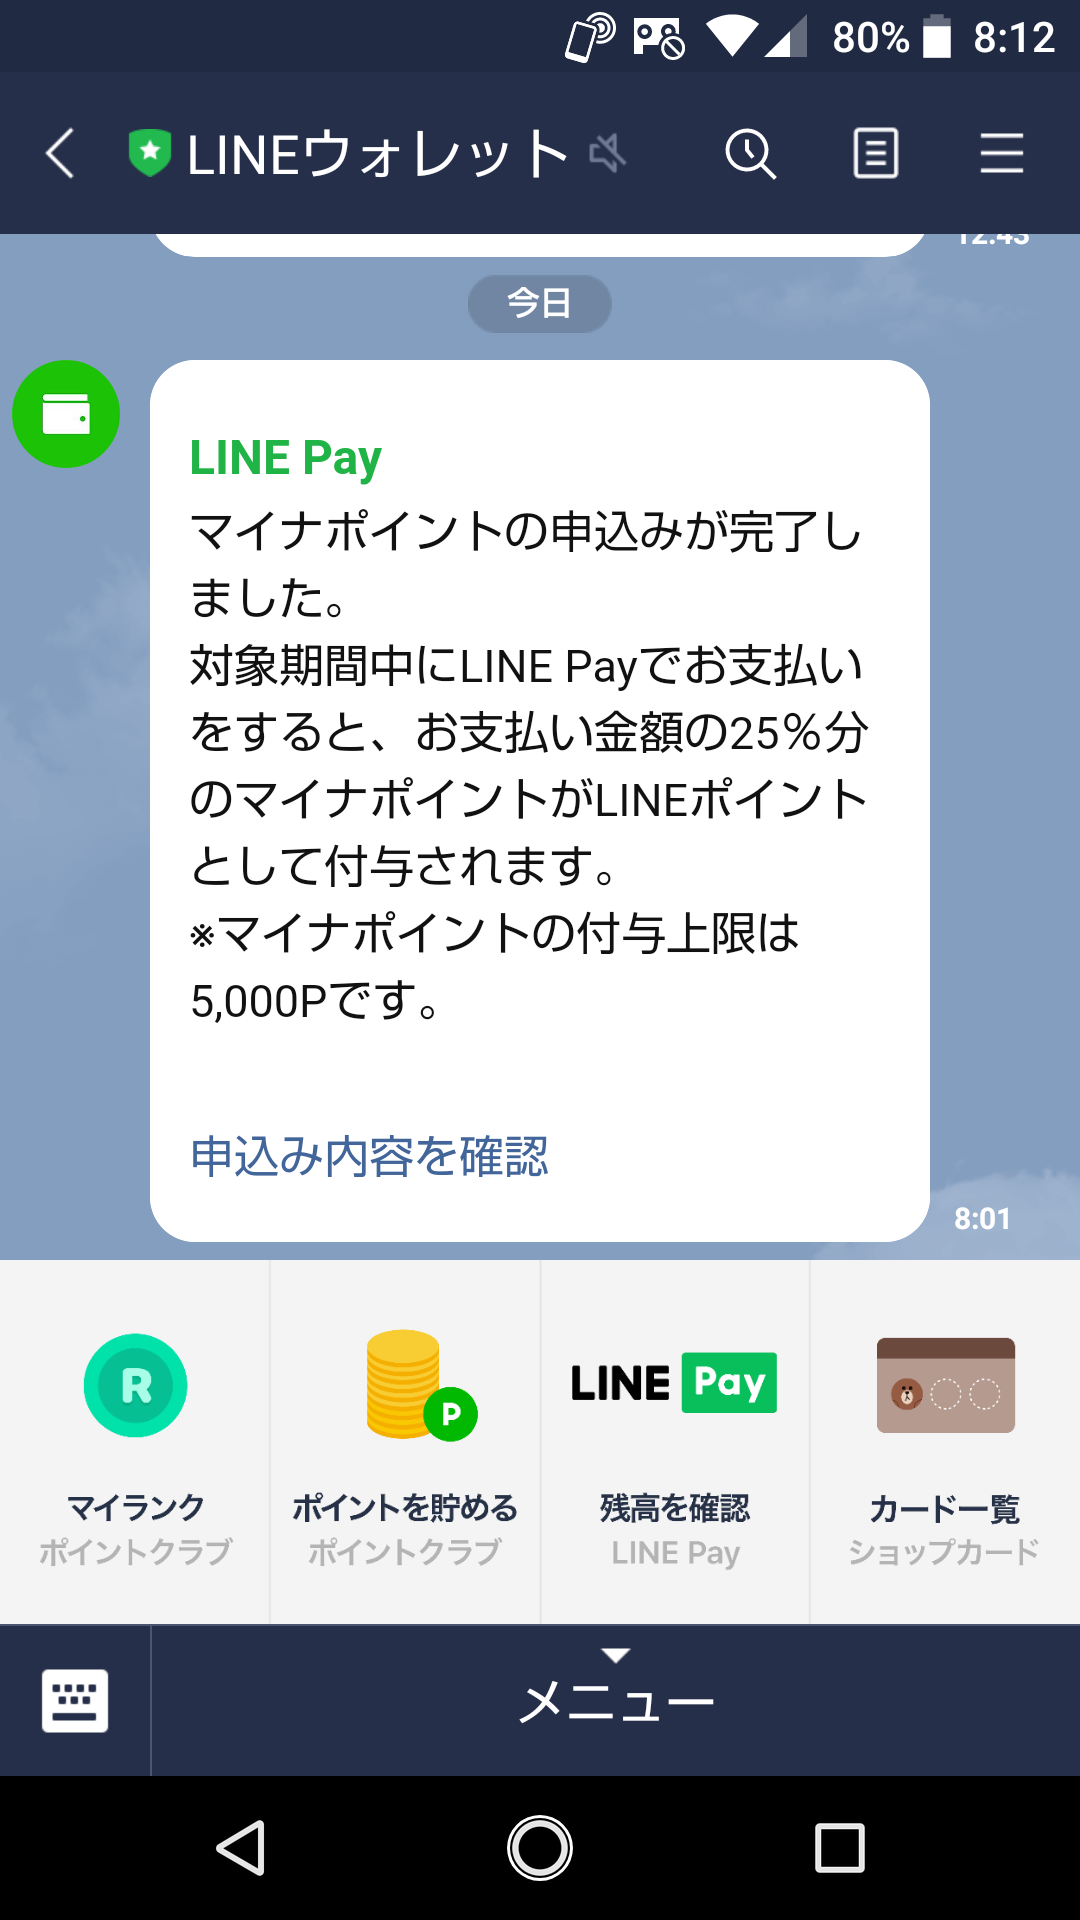 Line pay マイナ ポイント